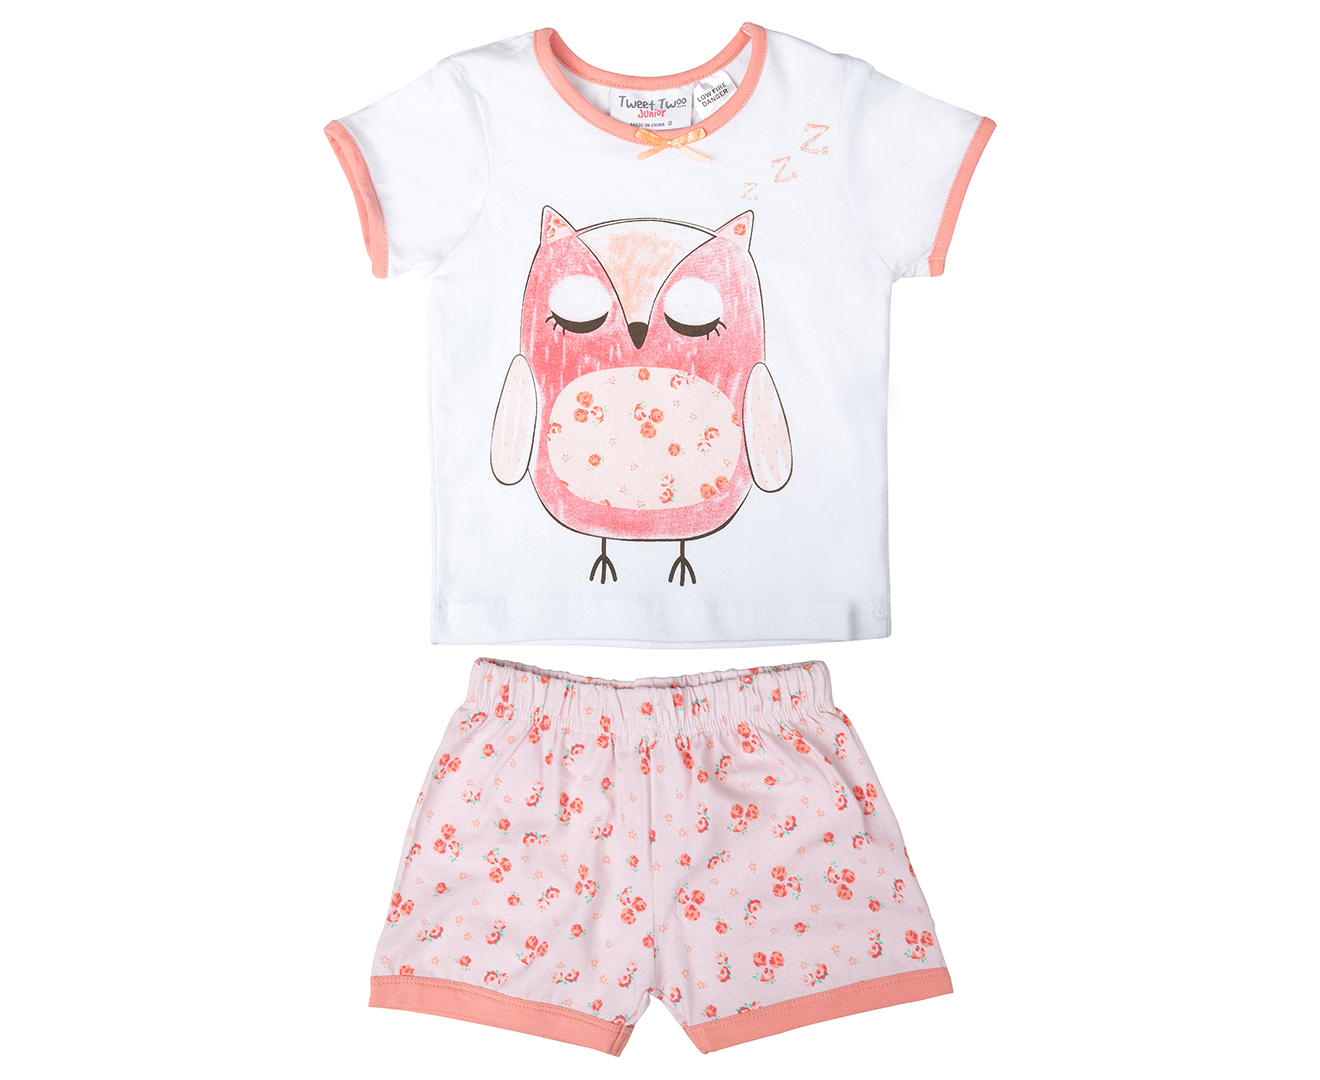 Tweet Twoo Babies' 2Pc Owl Pyjama Set - White/Pink